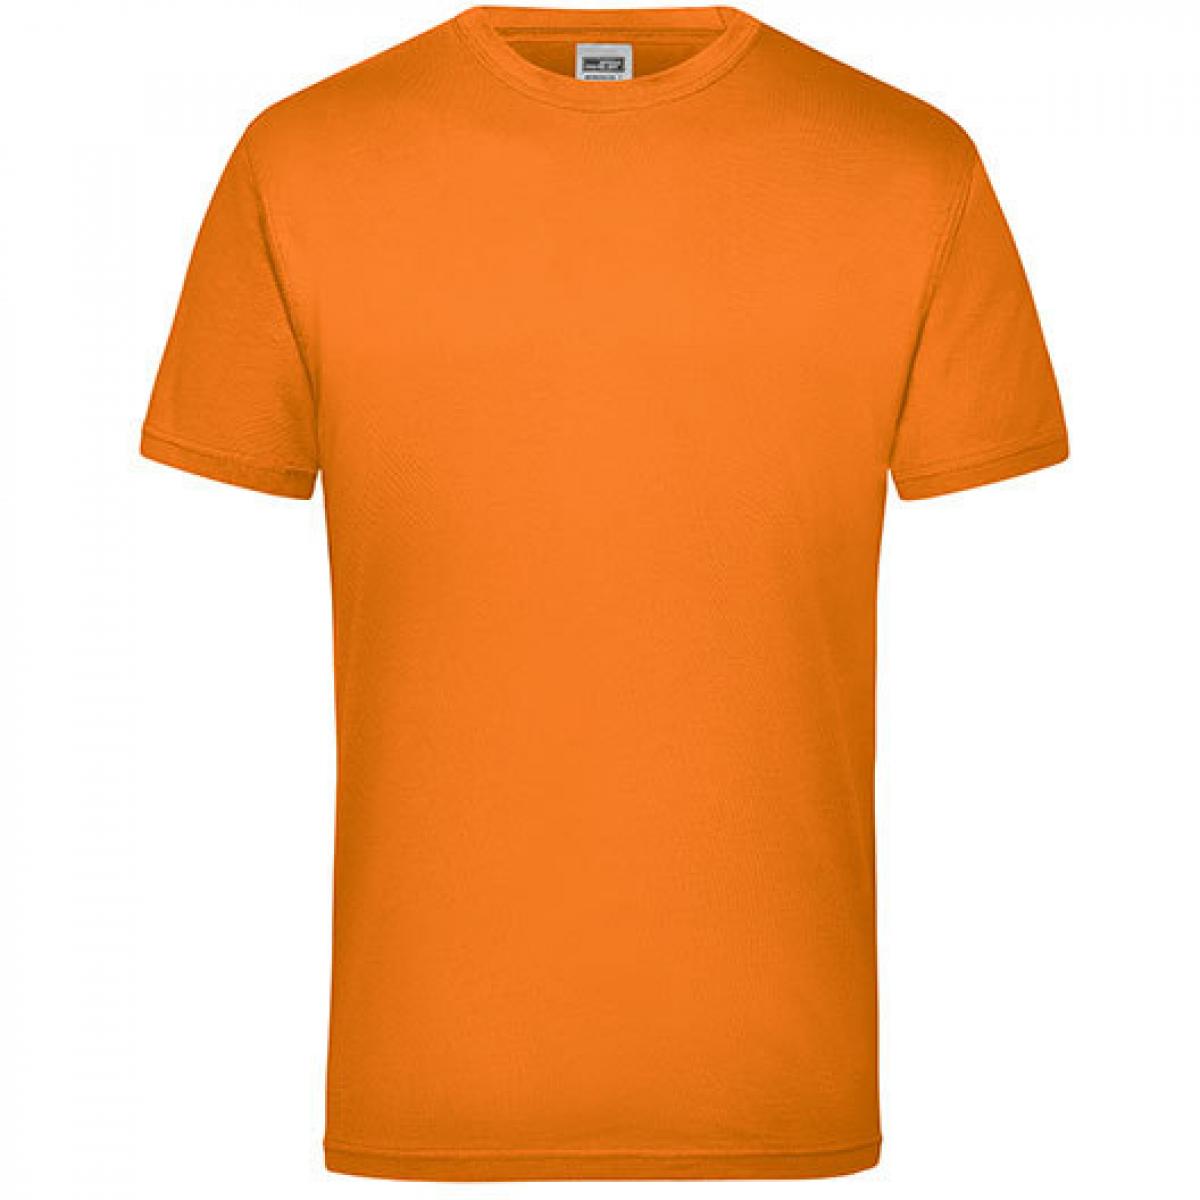 Hersteller: James+Nicholson Herstellernummer: JN 800 Artikelbezeichnung: Workwear Herren T-Shirt - waschbar bis 60 °C Farbe: Orange